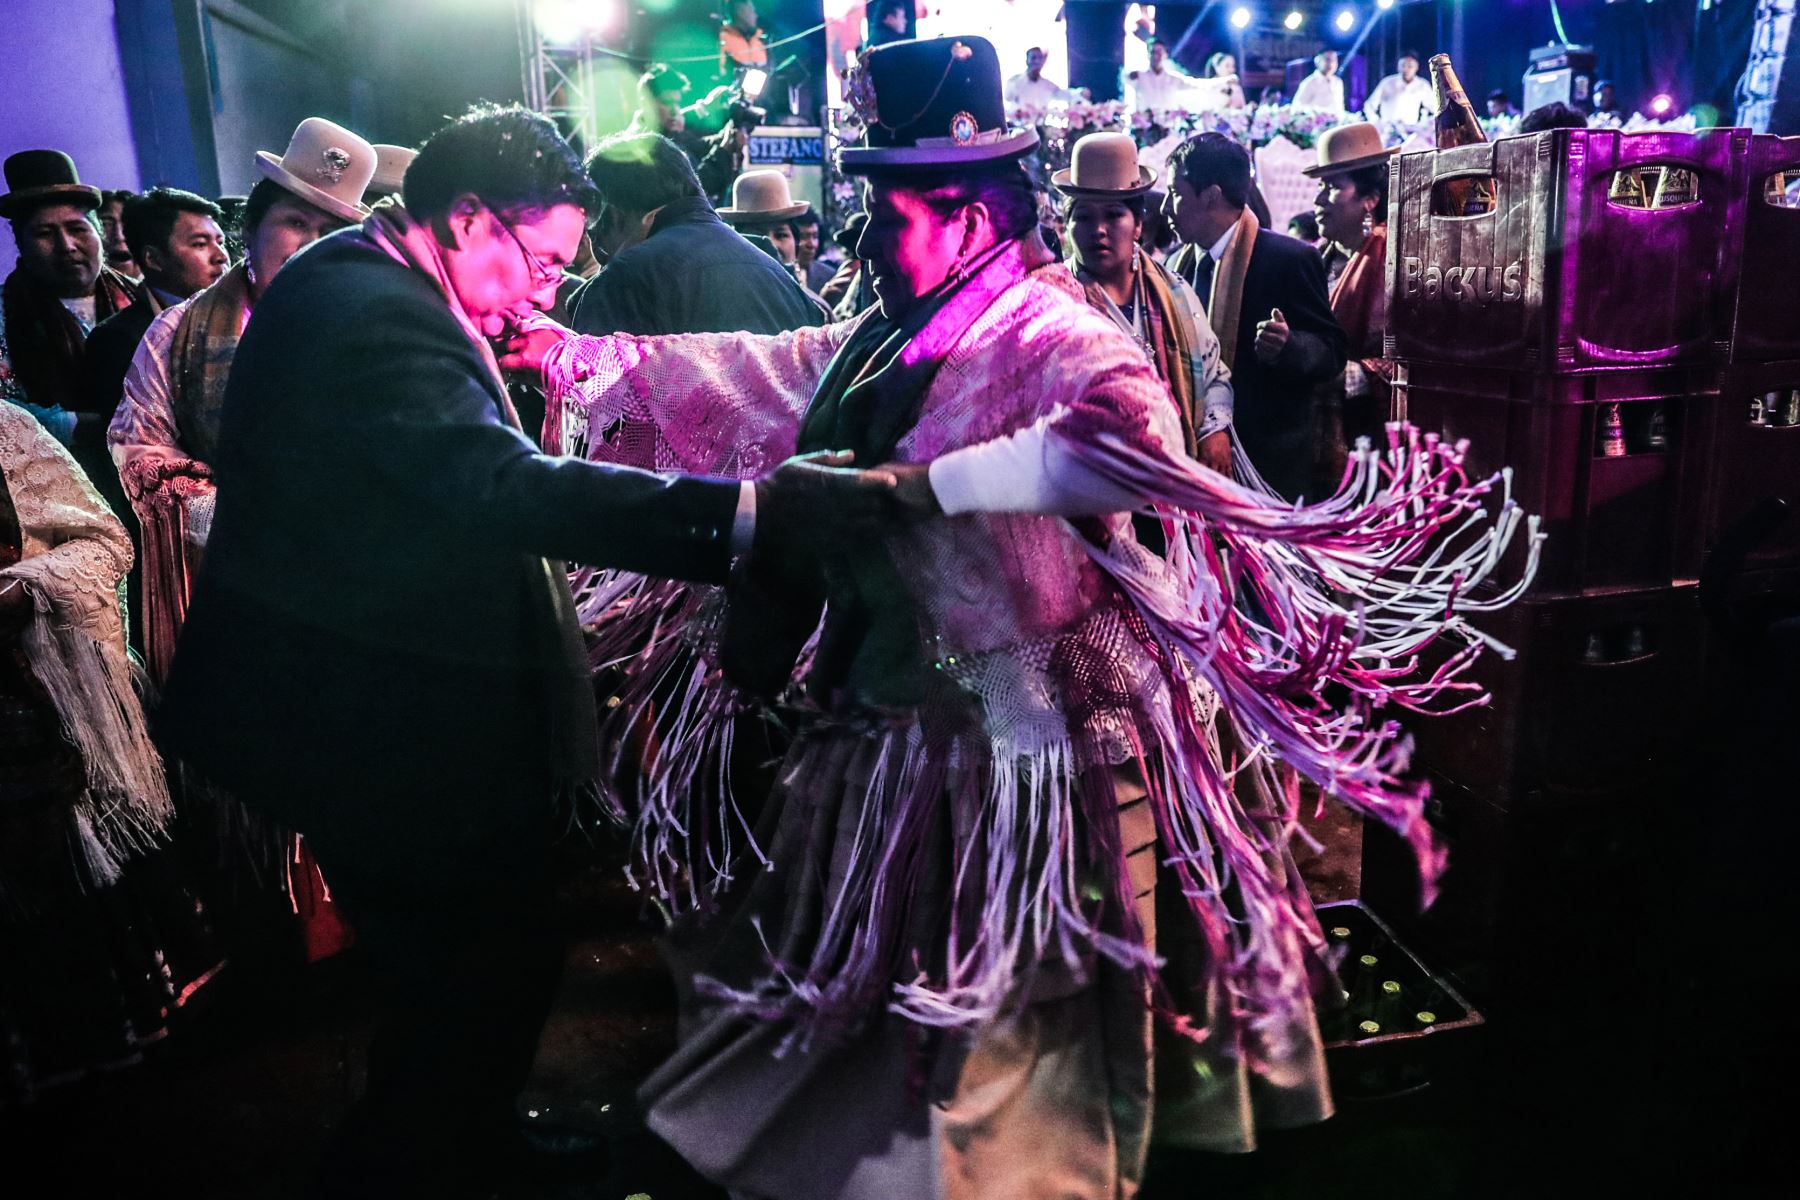 ¡Fue el matrimonio de 2018 de todo Puno!, que no es poca cosa, sino tierra de empresarios y artistas del folclor que saben celebrar bodas de ensueño. Foto: ANDINA/Carlos Lezama